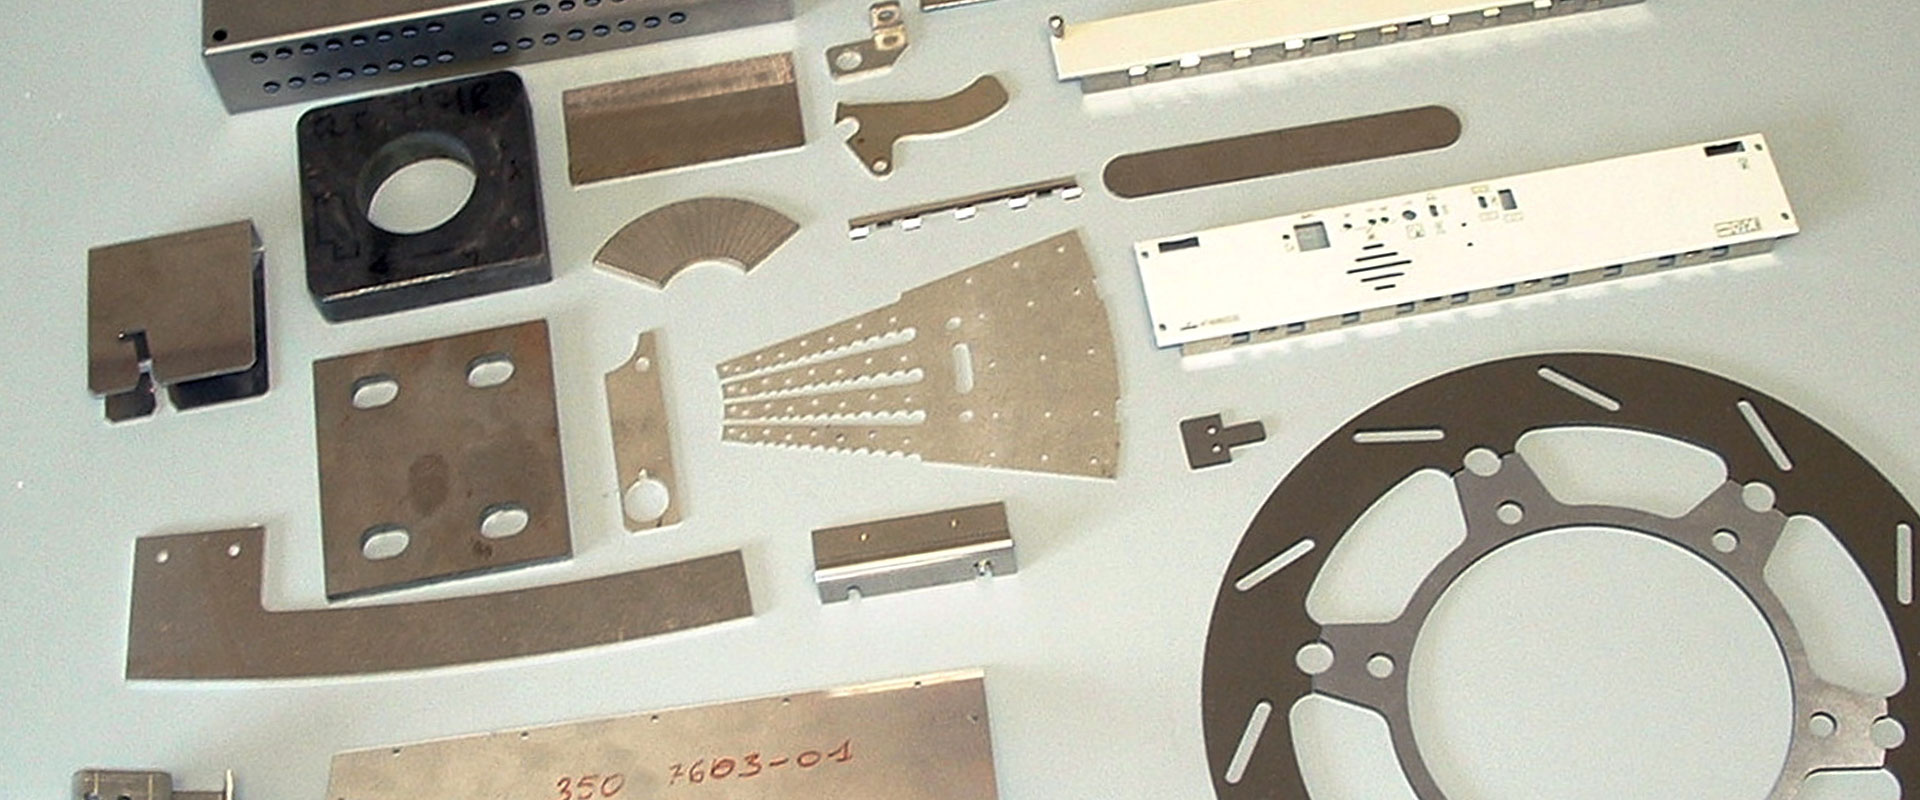 Comen Carpenterie metalliche e Carrozzerie per macchine utensili 0817733136  precisione acciaio Carpenterie per Quadri 